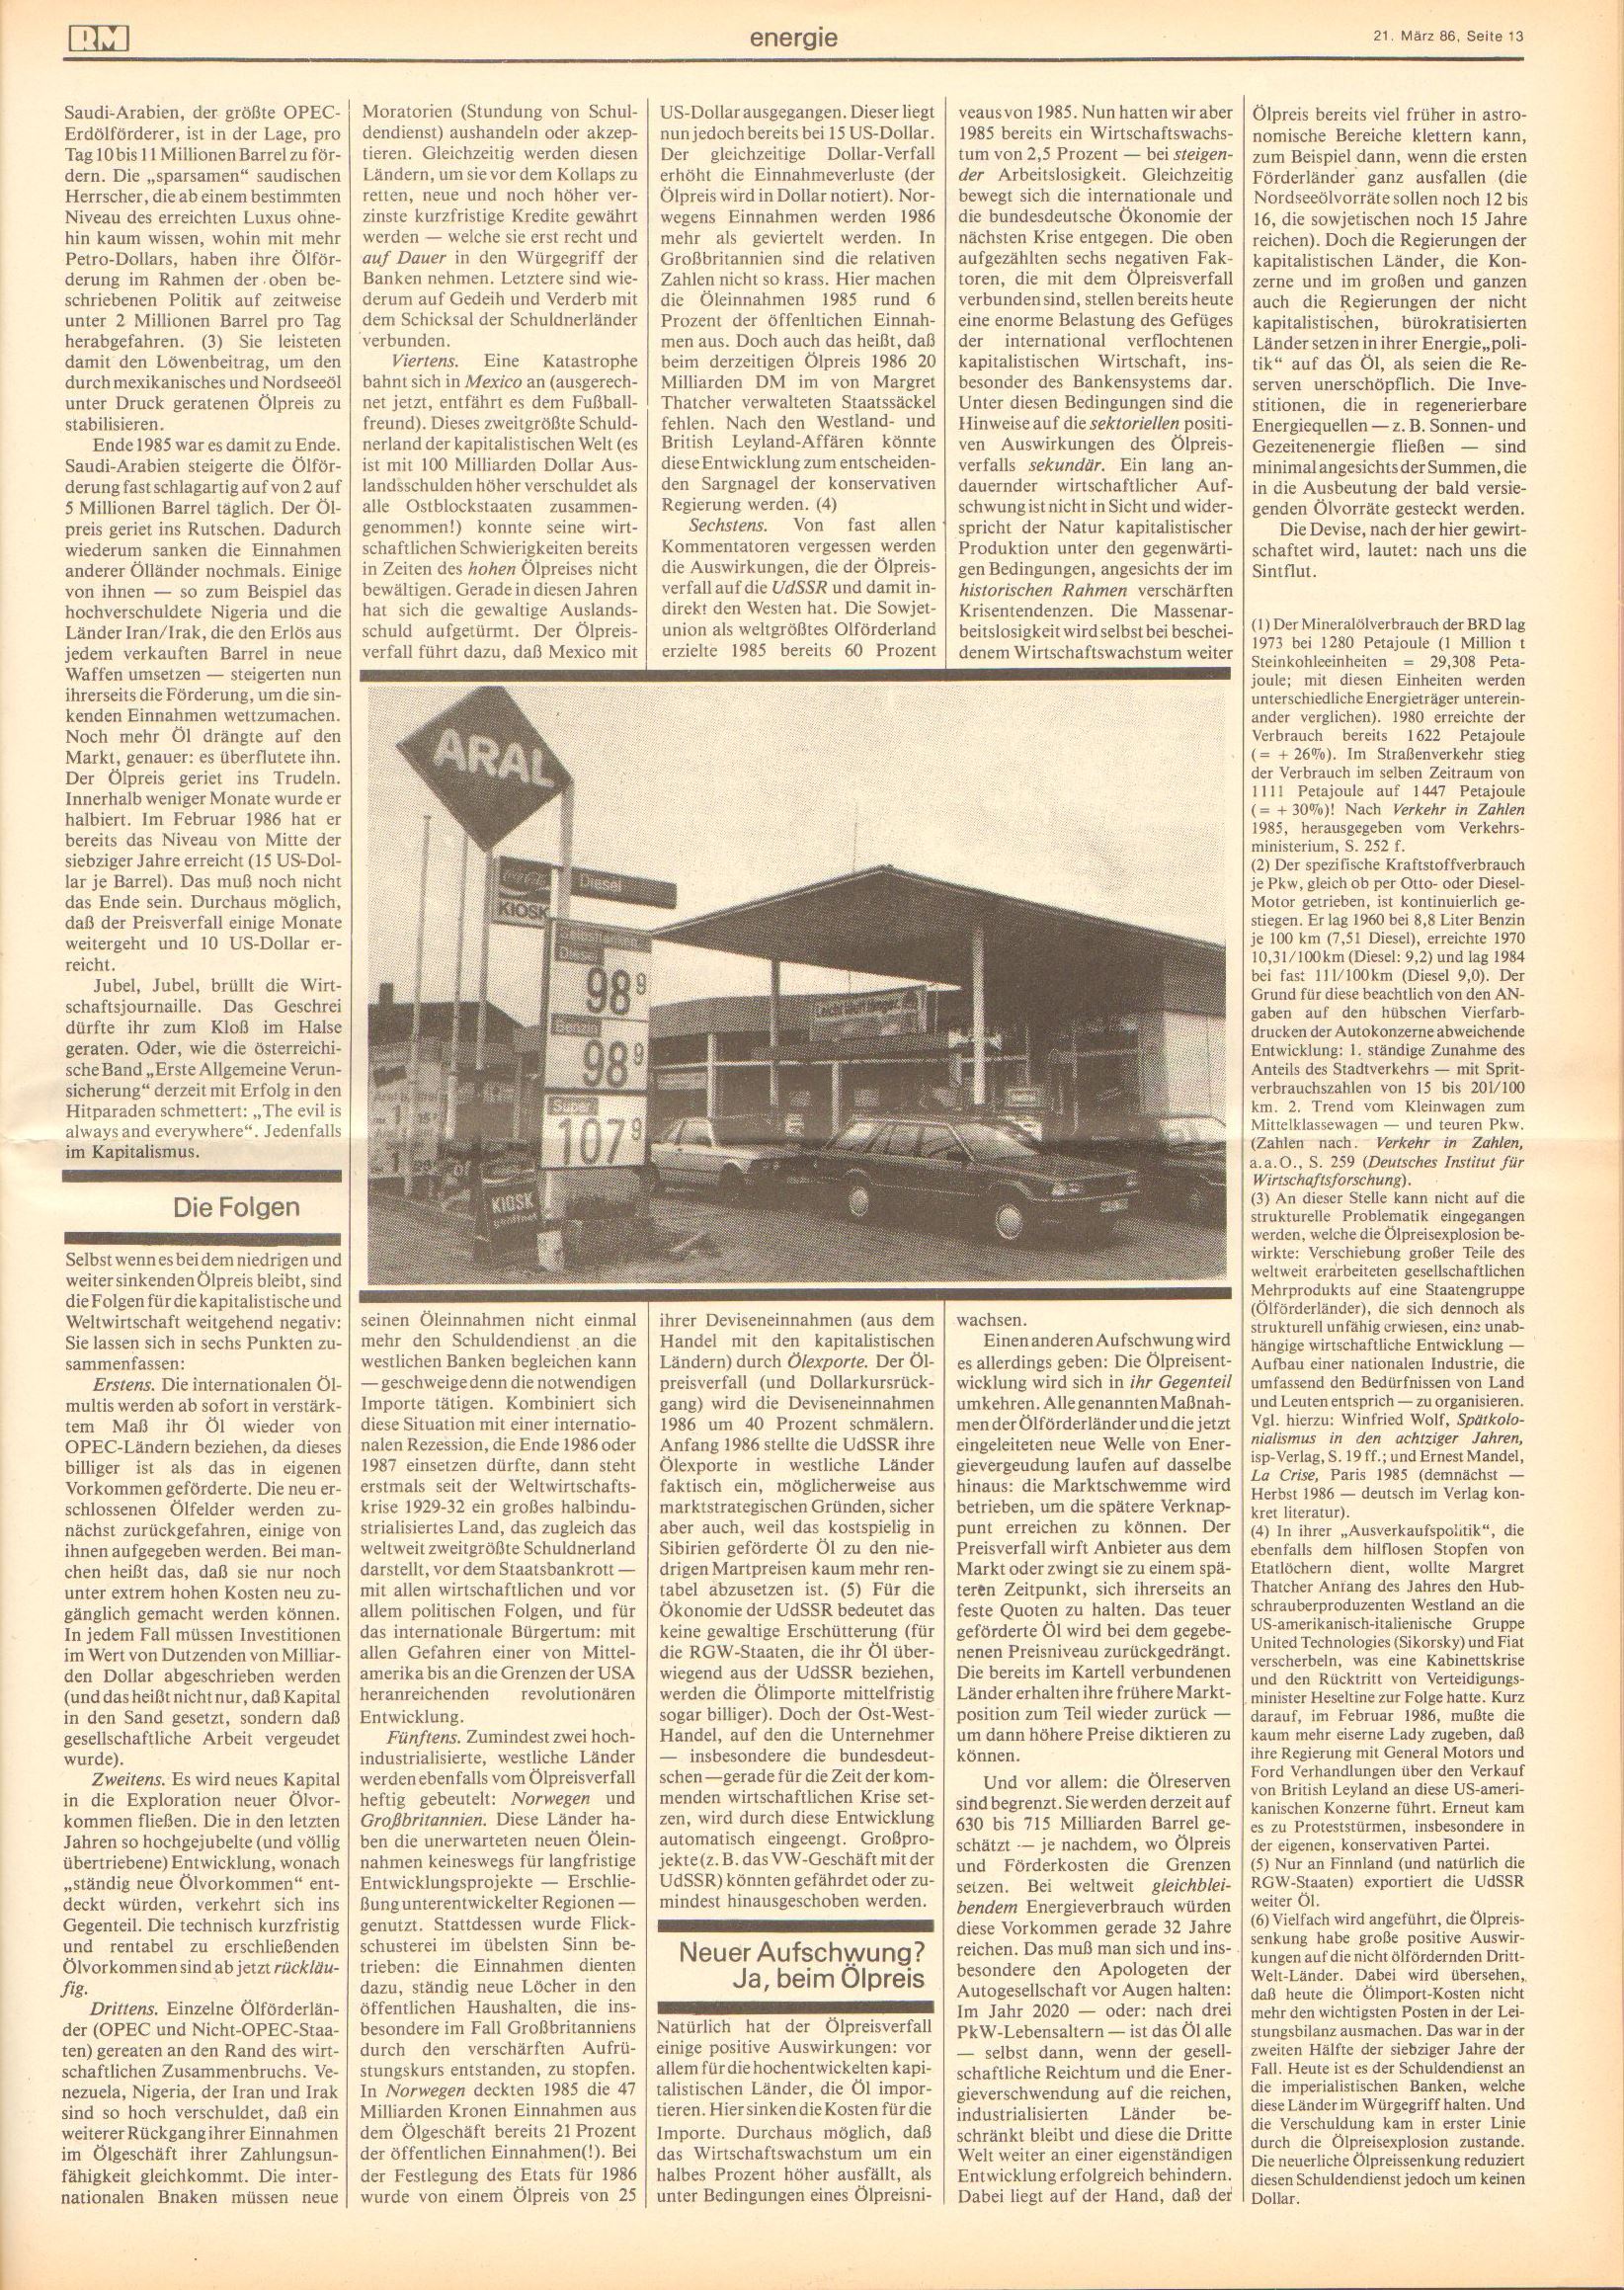 Roter Morgen, 20. Jg., 21. März 1986, Nr. 9, Seite 12